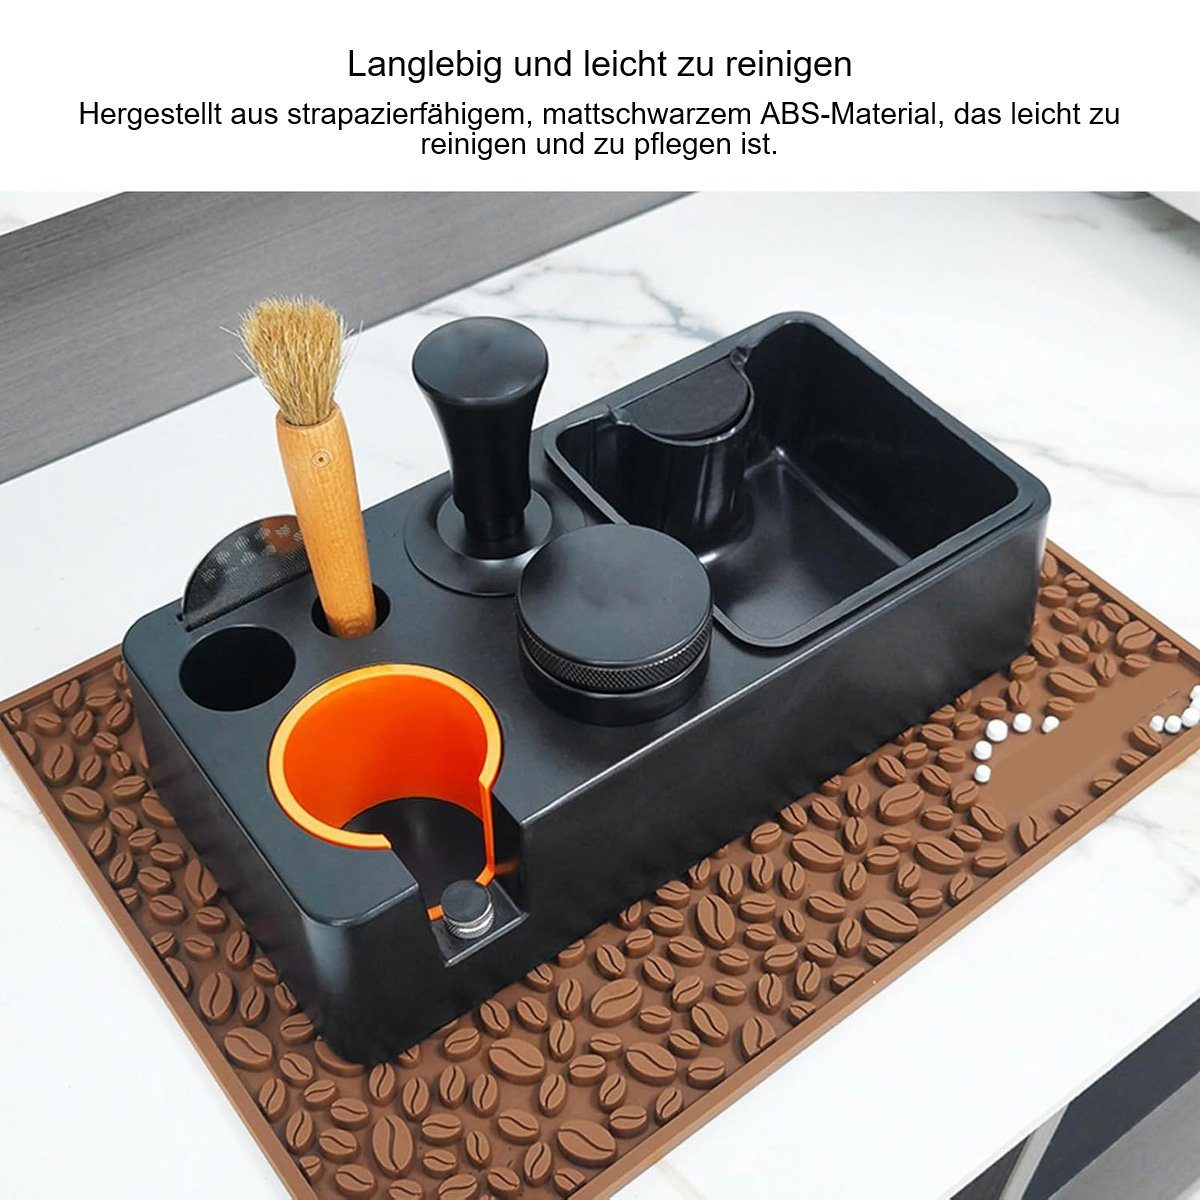 flowgoer Allzweckkiste Filz Schubladenorganizer - Waschbar & 7-teiliges  Set, Langlebig, leicht zu reinigen, einzigartig, praktisch und vielseitig